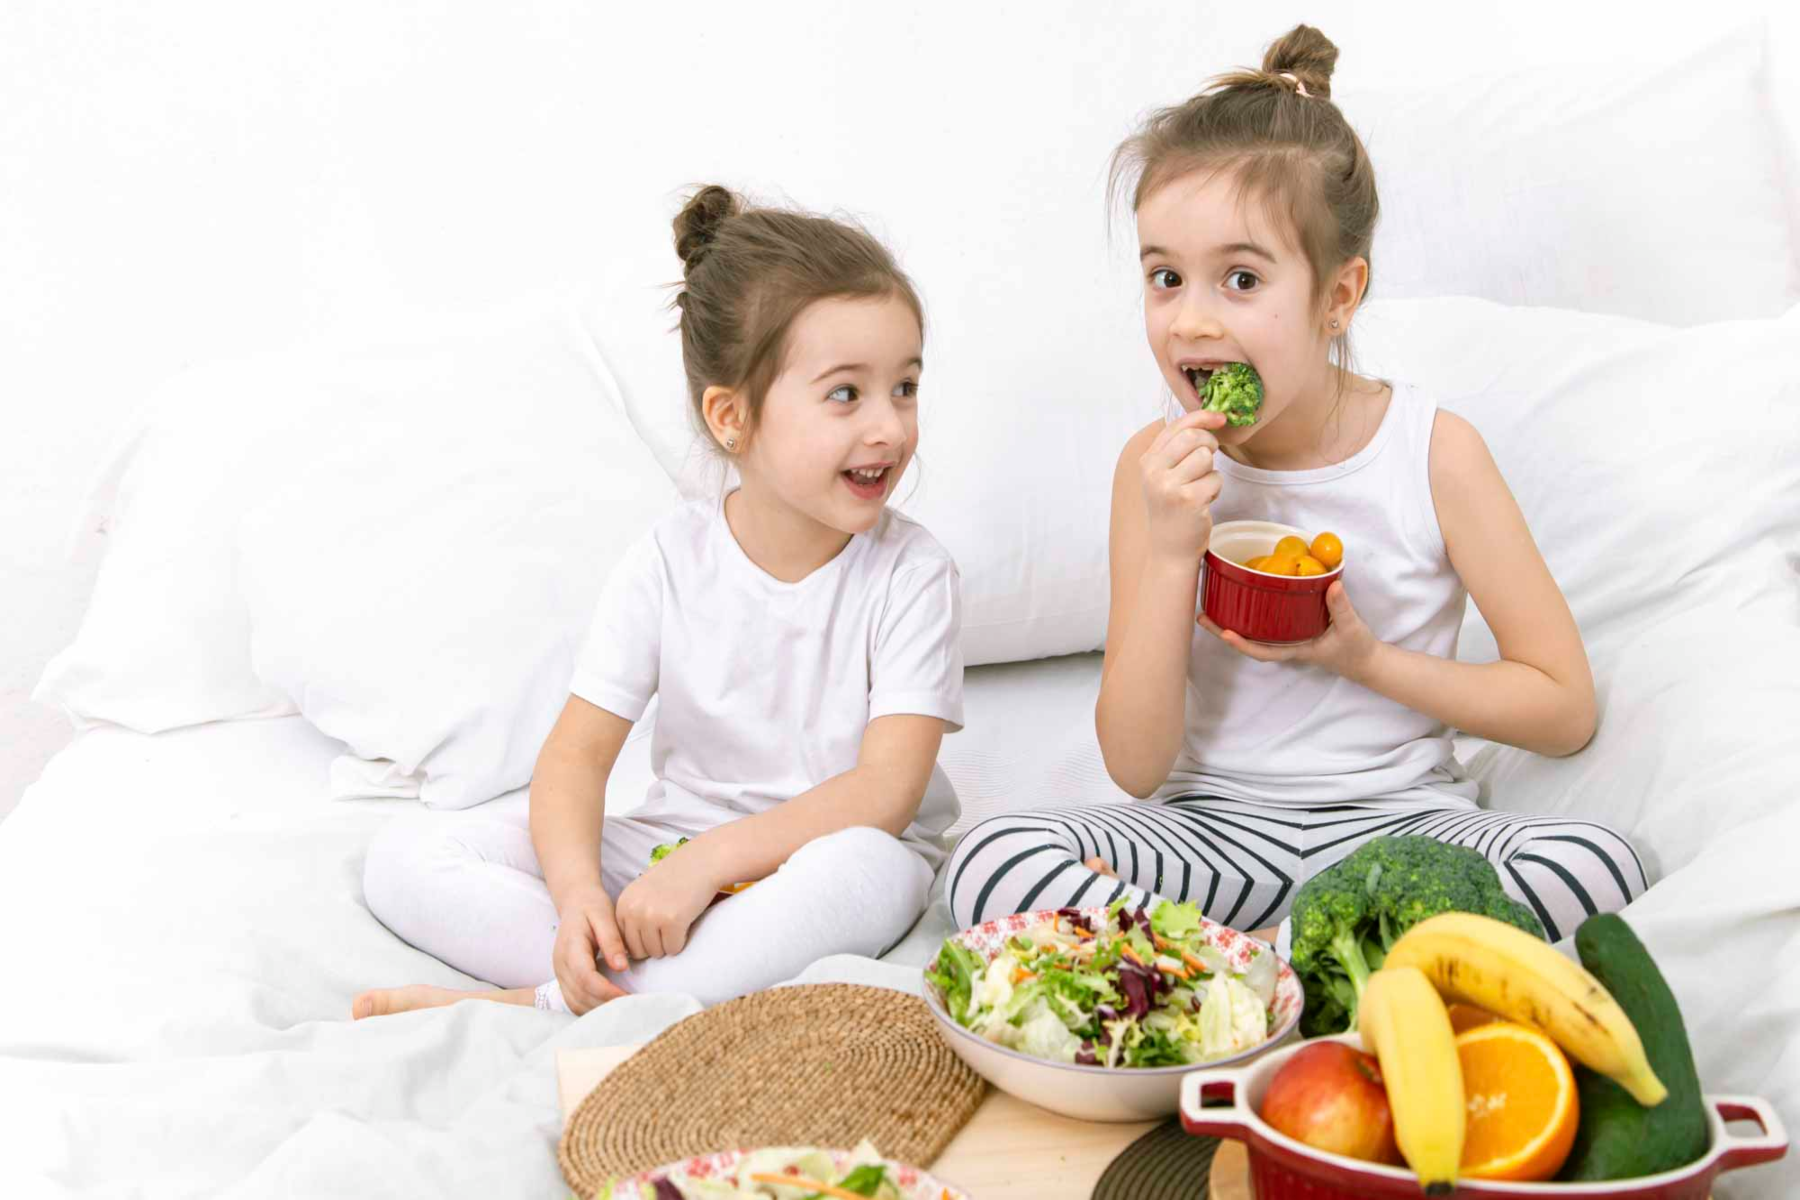 Μωρά διατροφή: Λόγοι που κάνουν την  υγιεινή διατροφή άκρως απαραίτητη για τα παιδιά